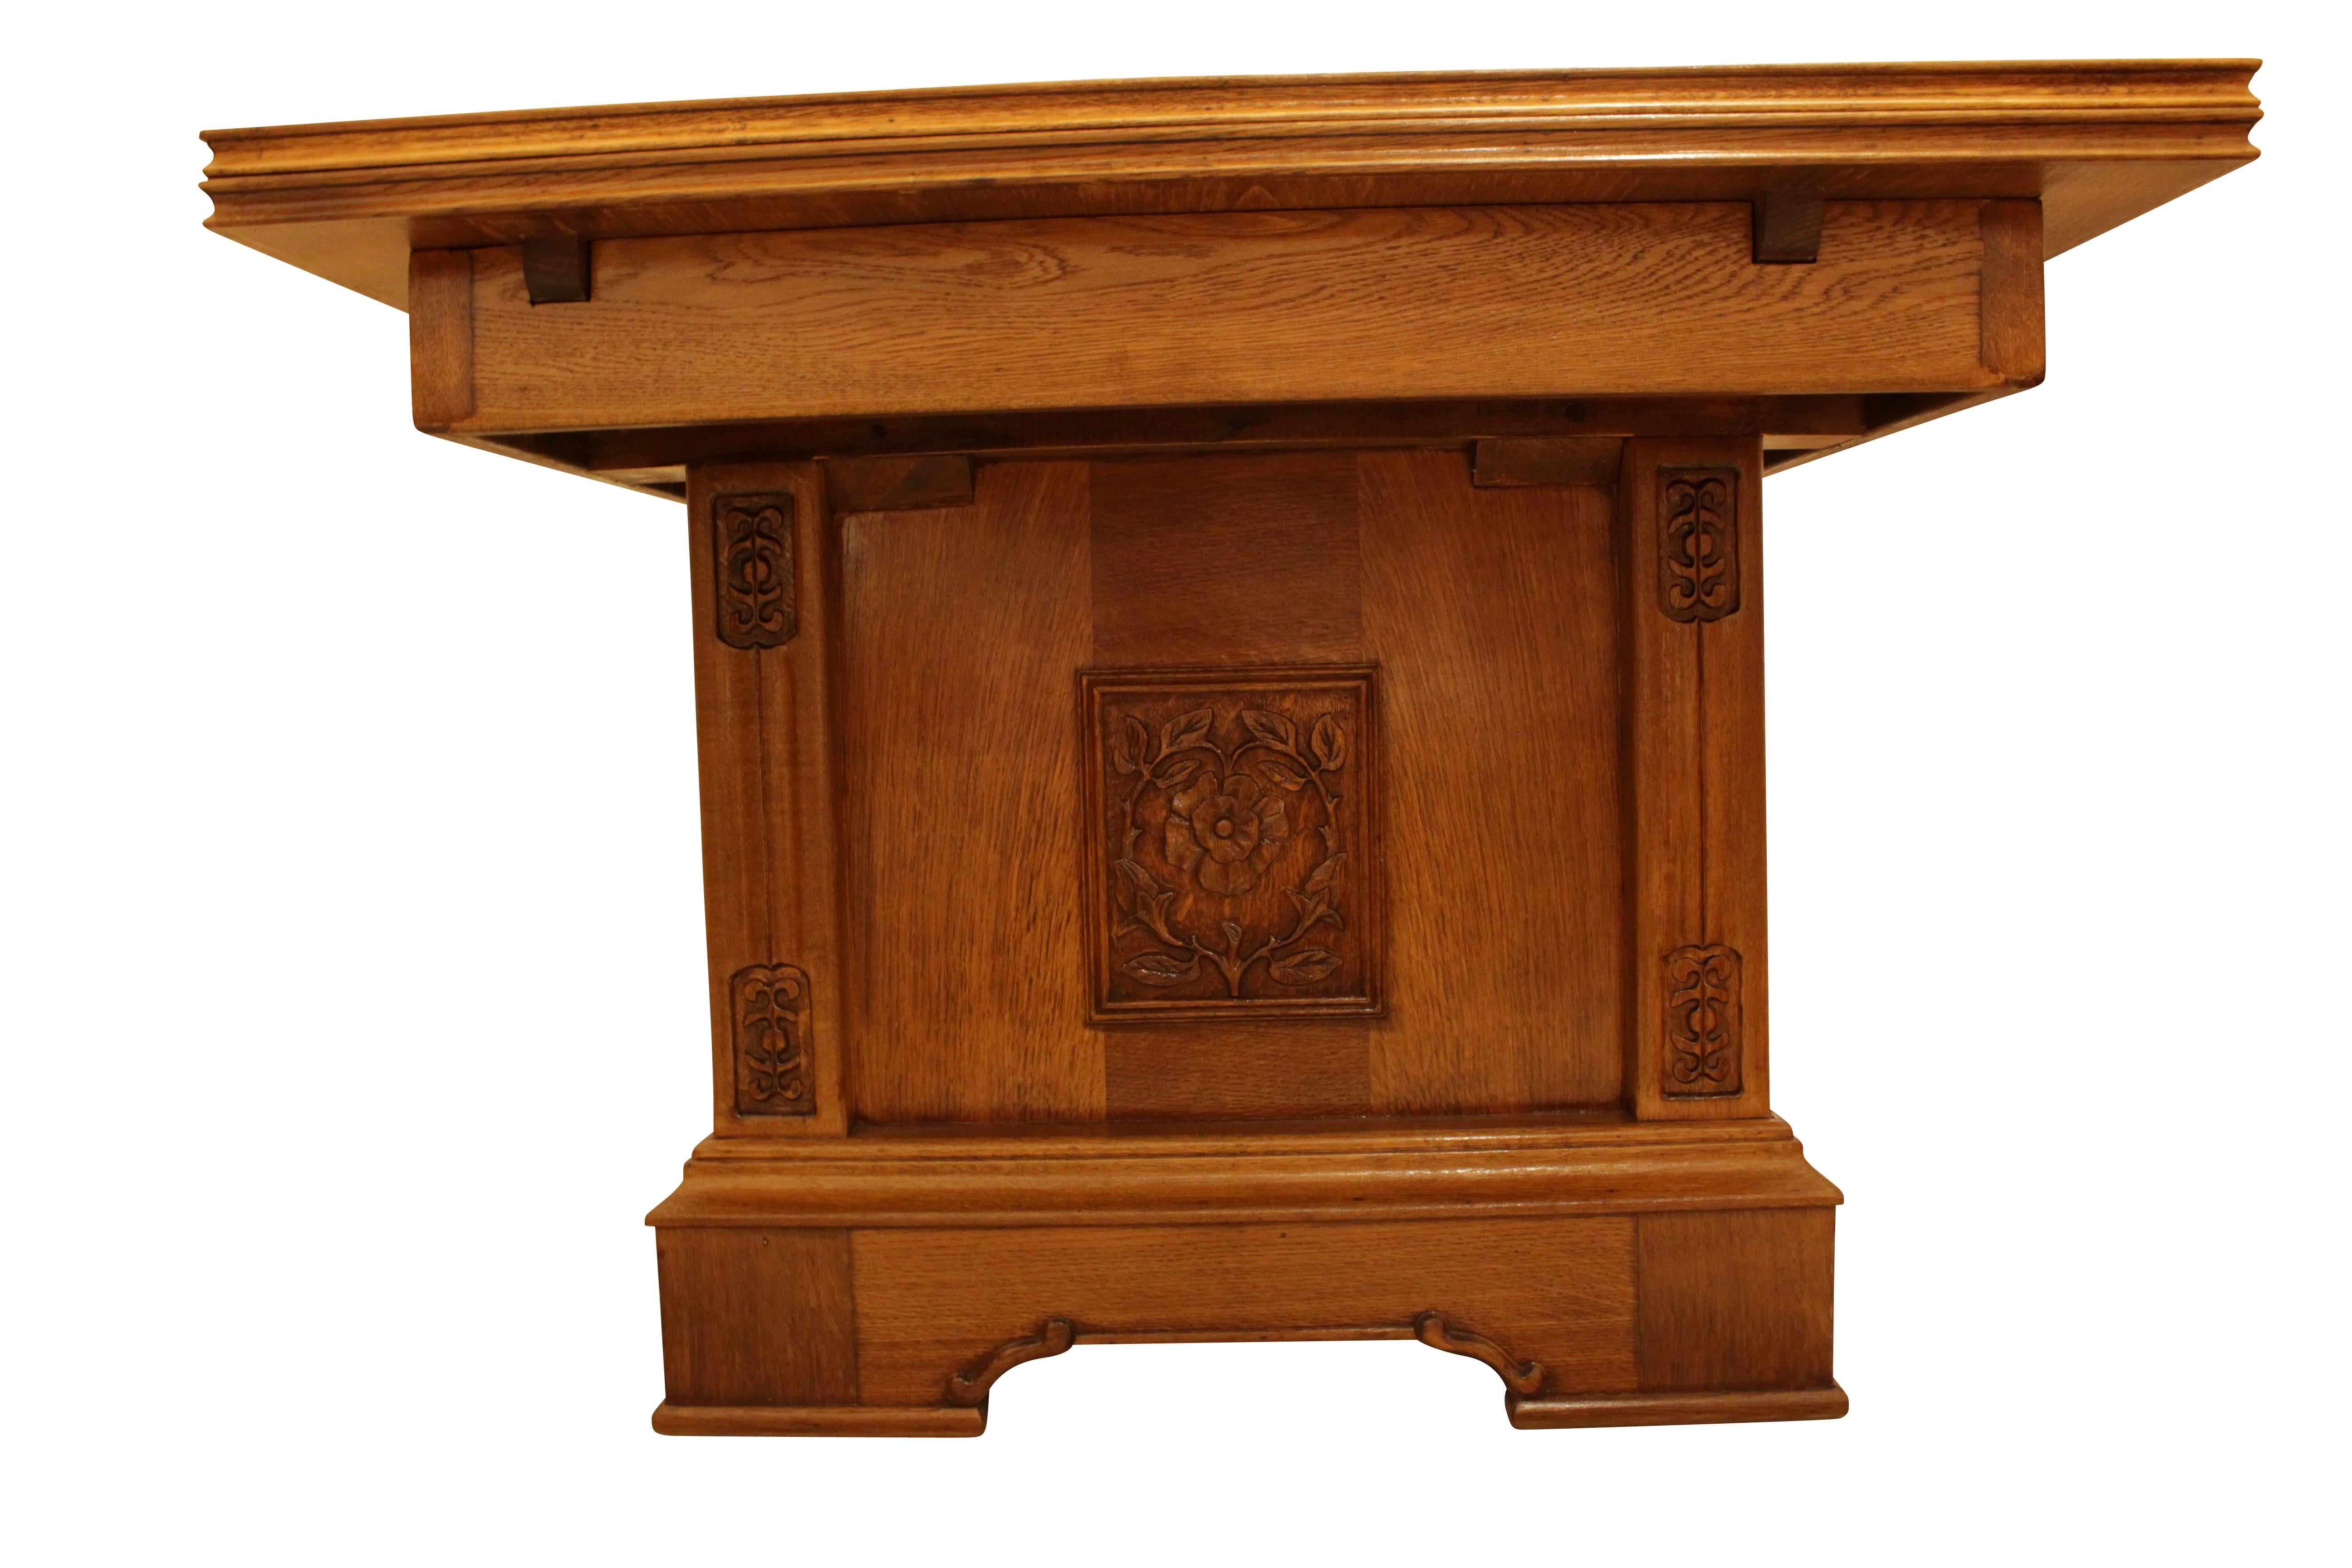 Polished Art Nouveau Oak Big Extendable Table For Sale